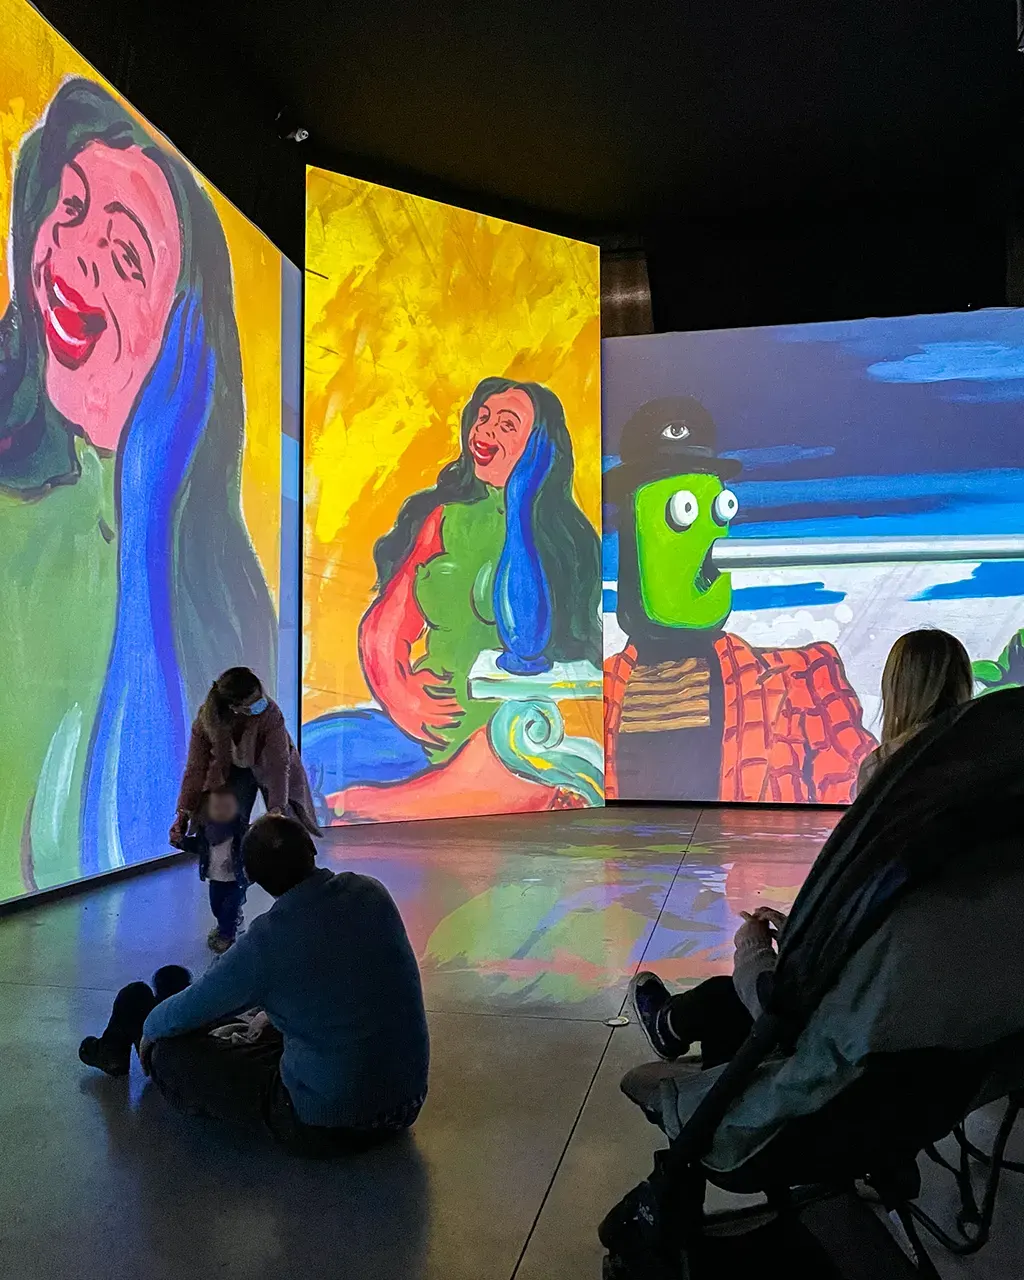 Une petite fille devant le grand écran projetant les oeuvres de Klimt lors de l'expostion immersive de Bruxelles